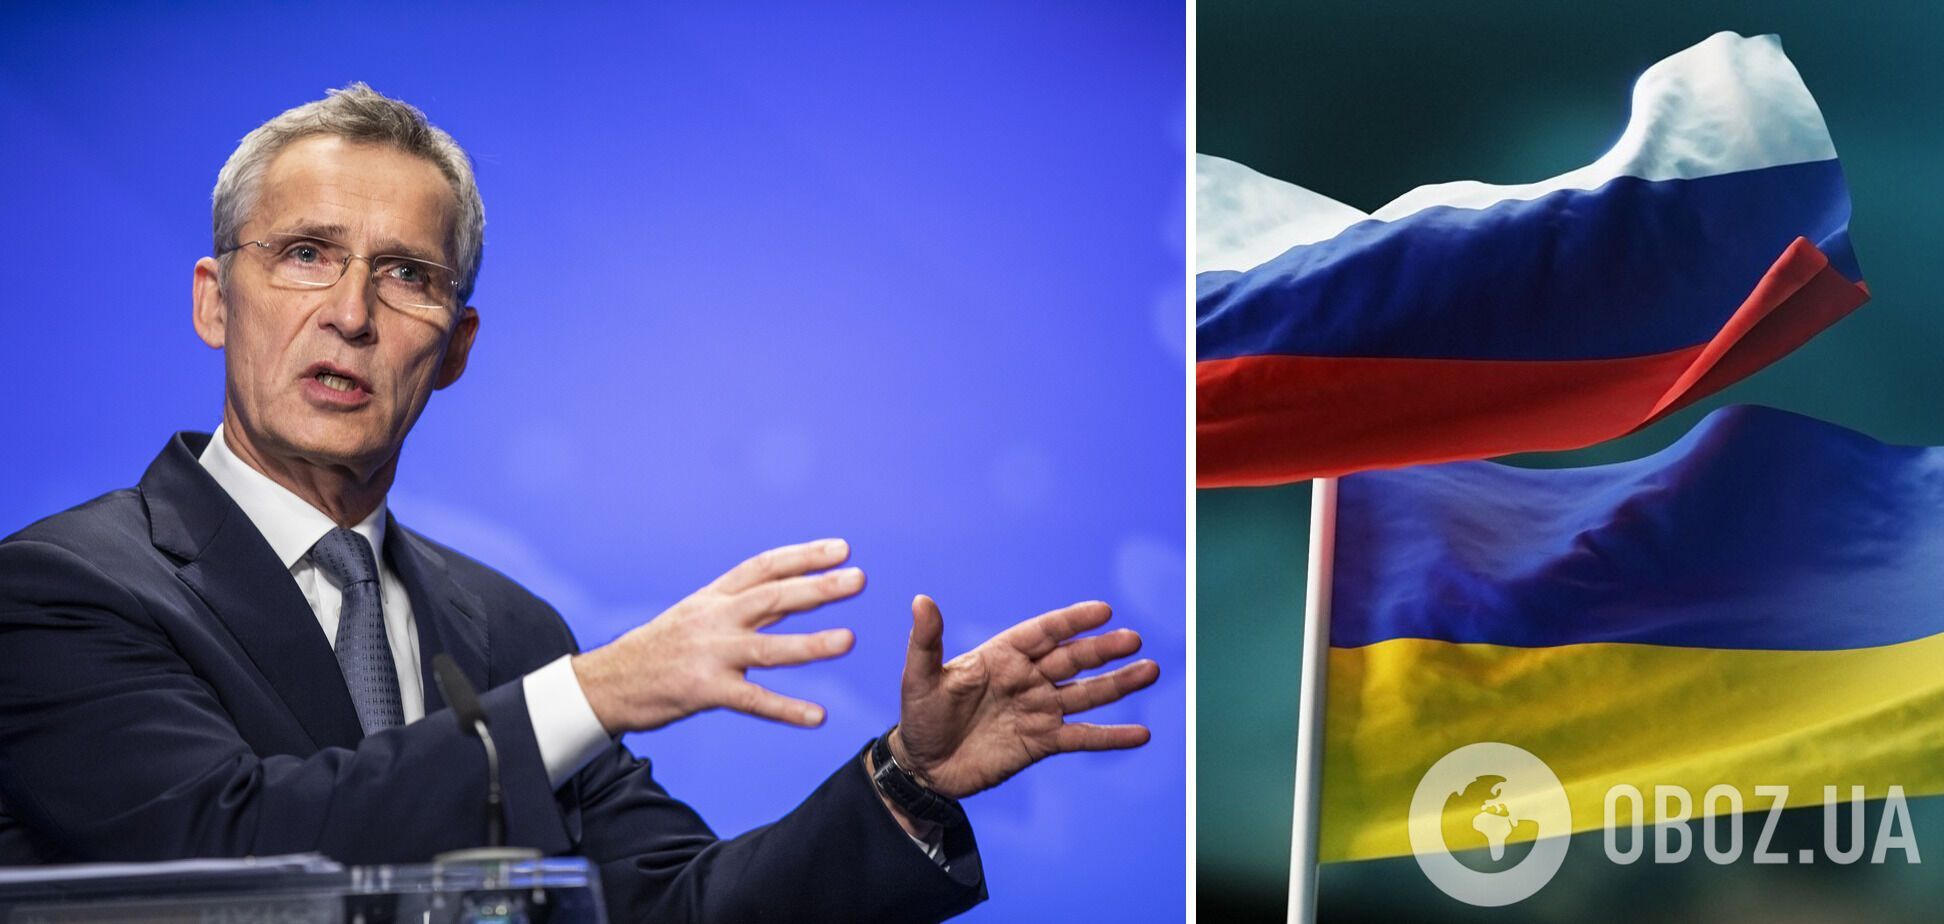 Столтенберг призвал Россию быть прозрачной в своих намерениях по отношению к Украине